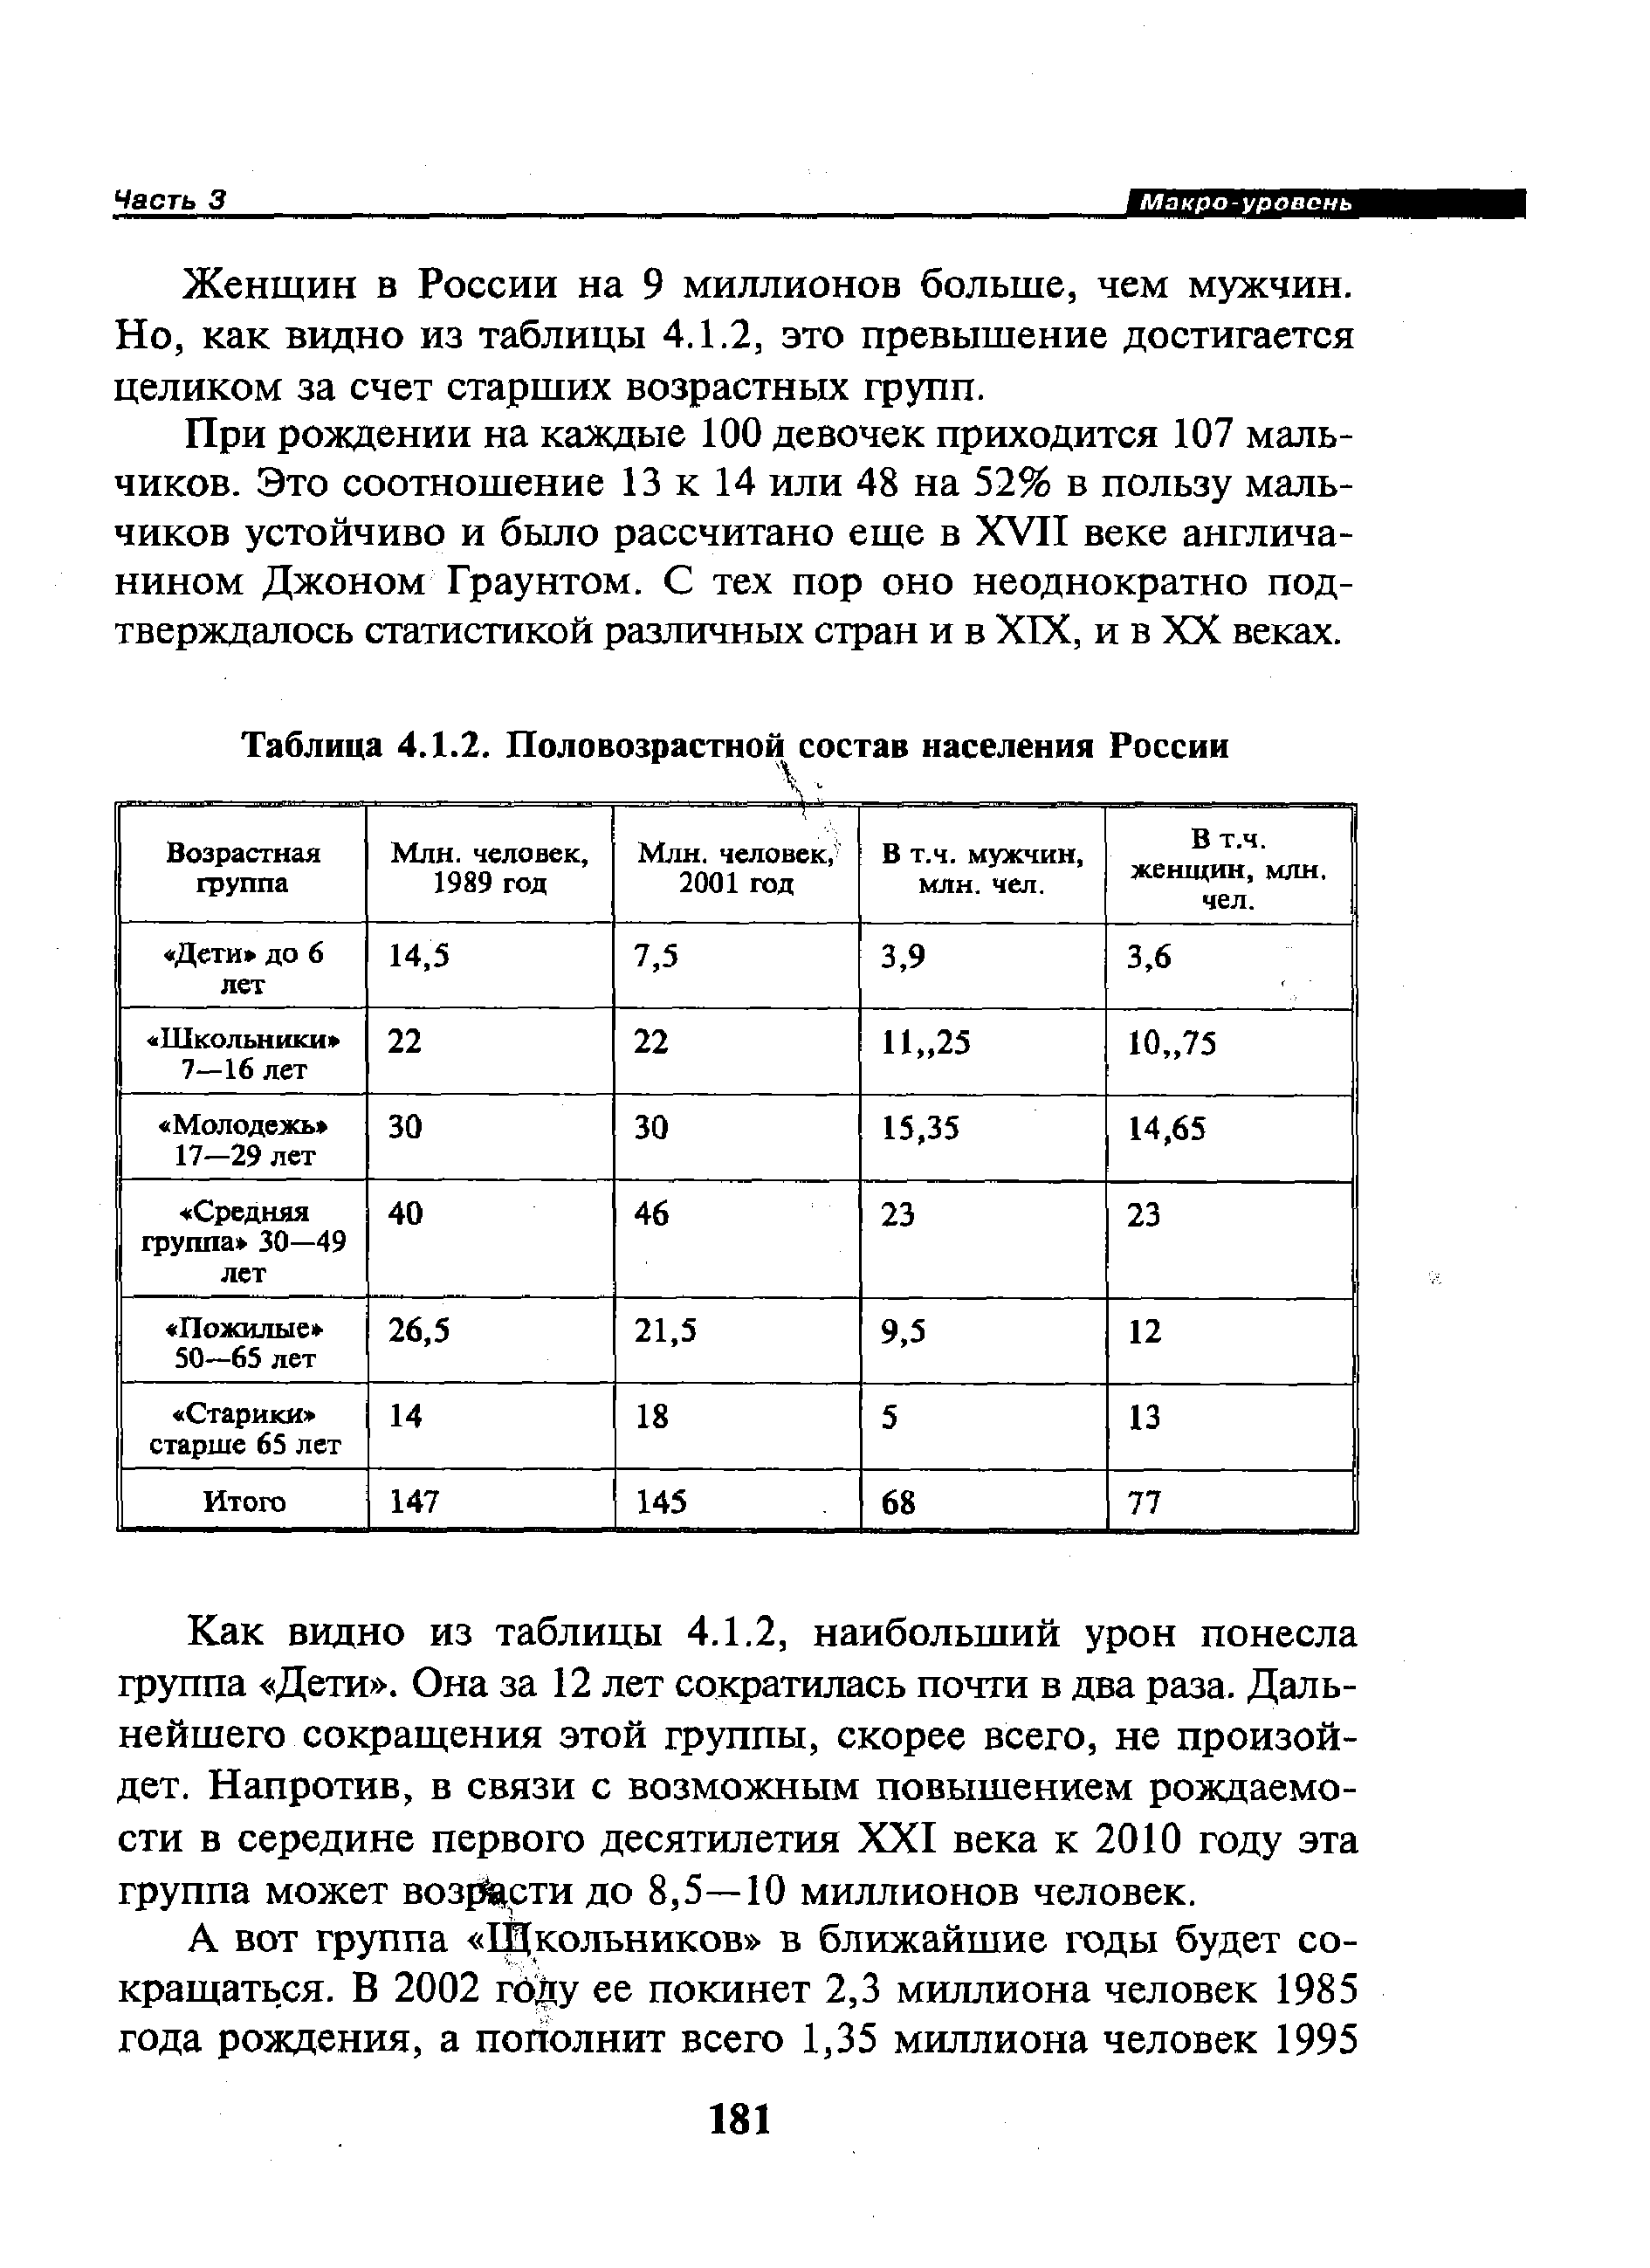 Таблица 4.1.2. Половозрастной состав населения России
